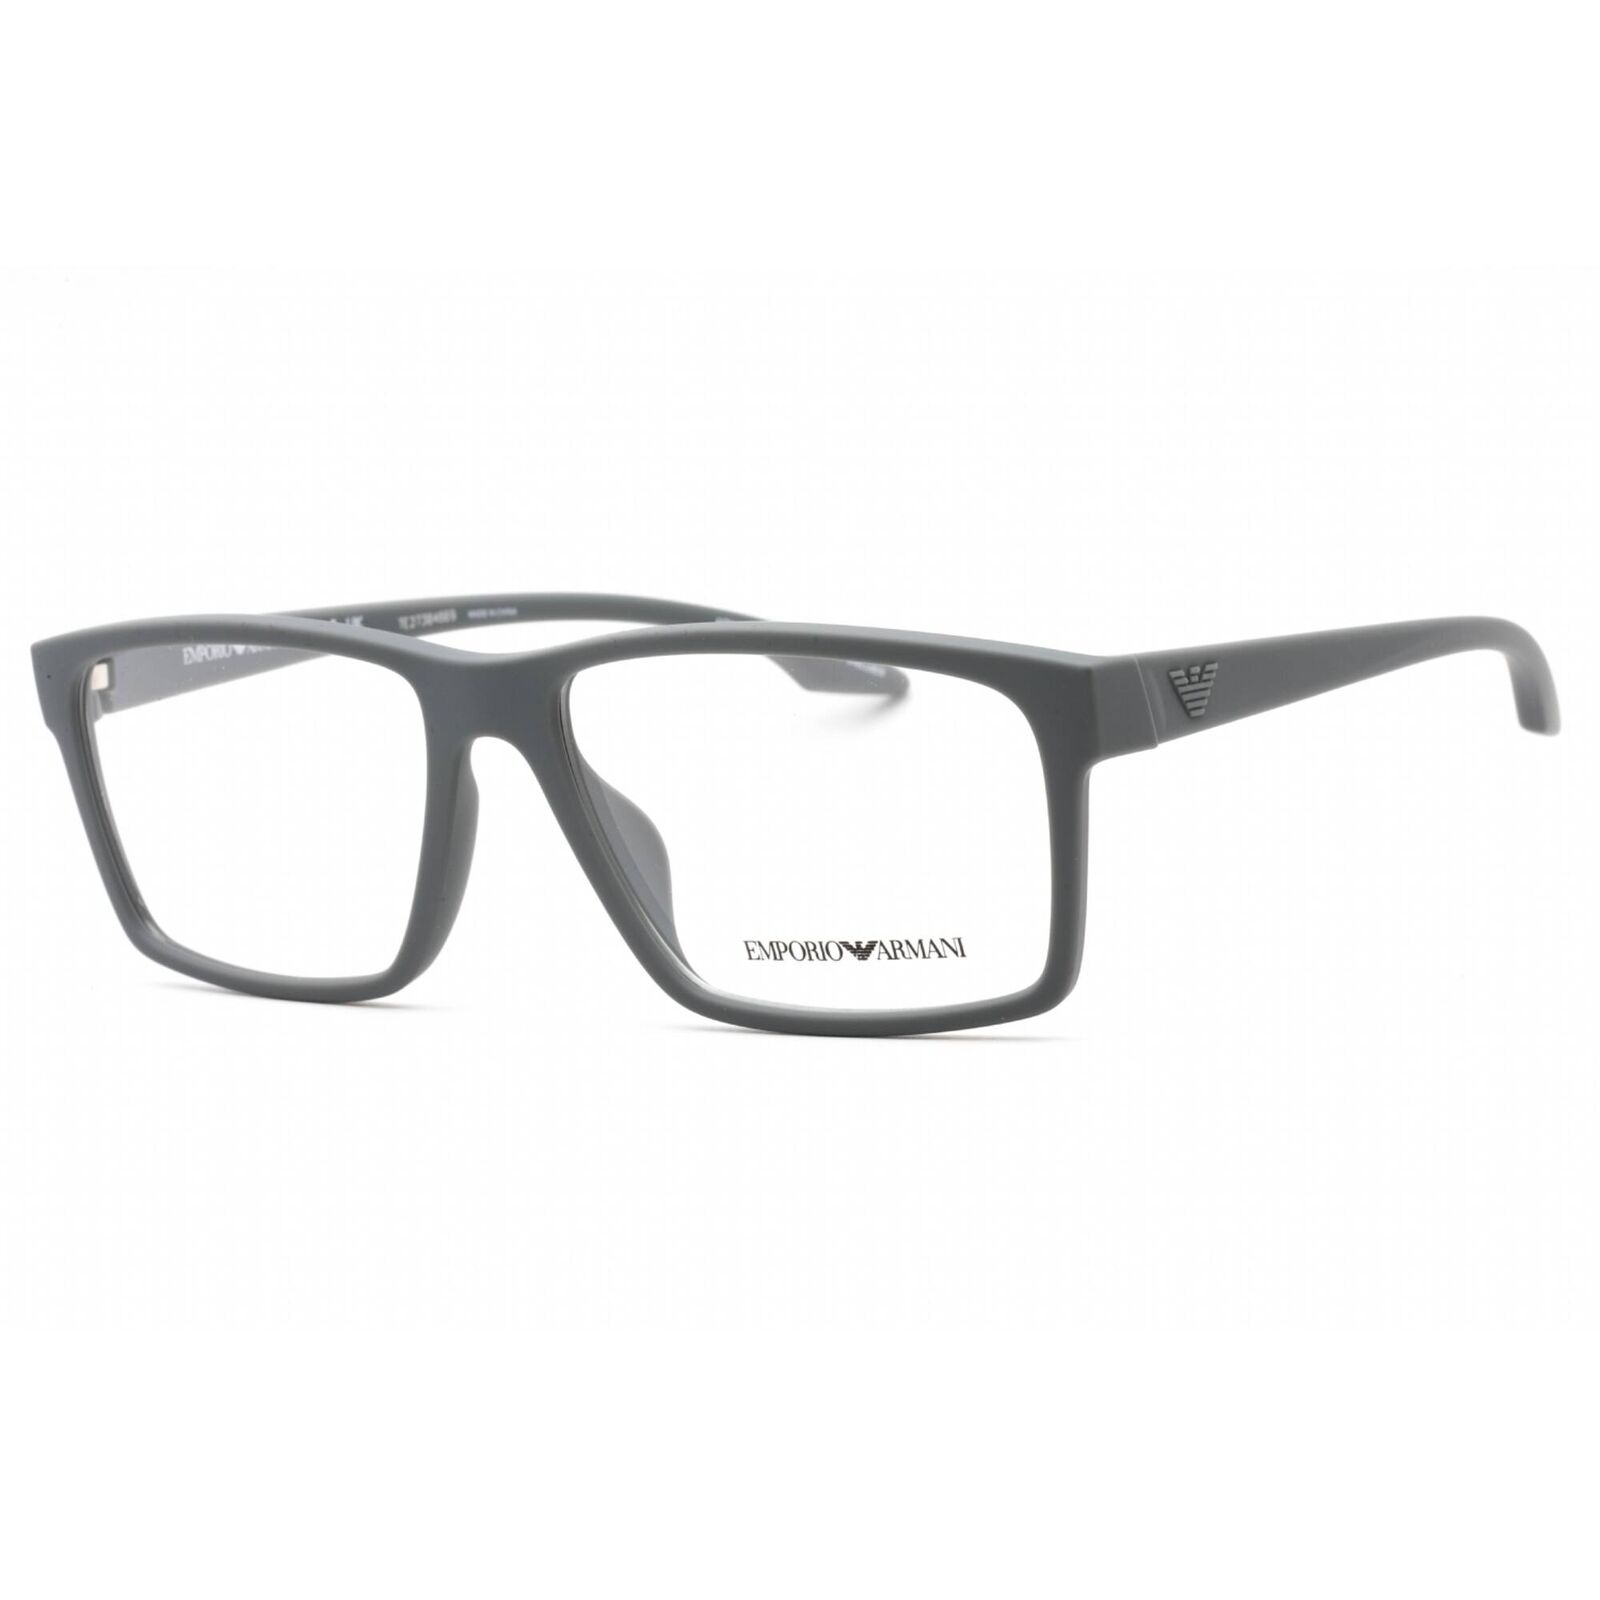 Emporio Armani Men's Eyeglasses Rubberized Grey Full Rim Frame 0EA3210U 5141 Emporio Armani 0EA3210U 5141